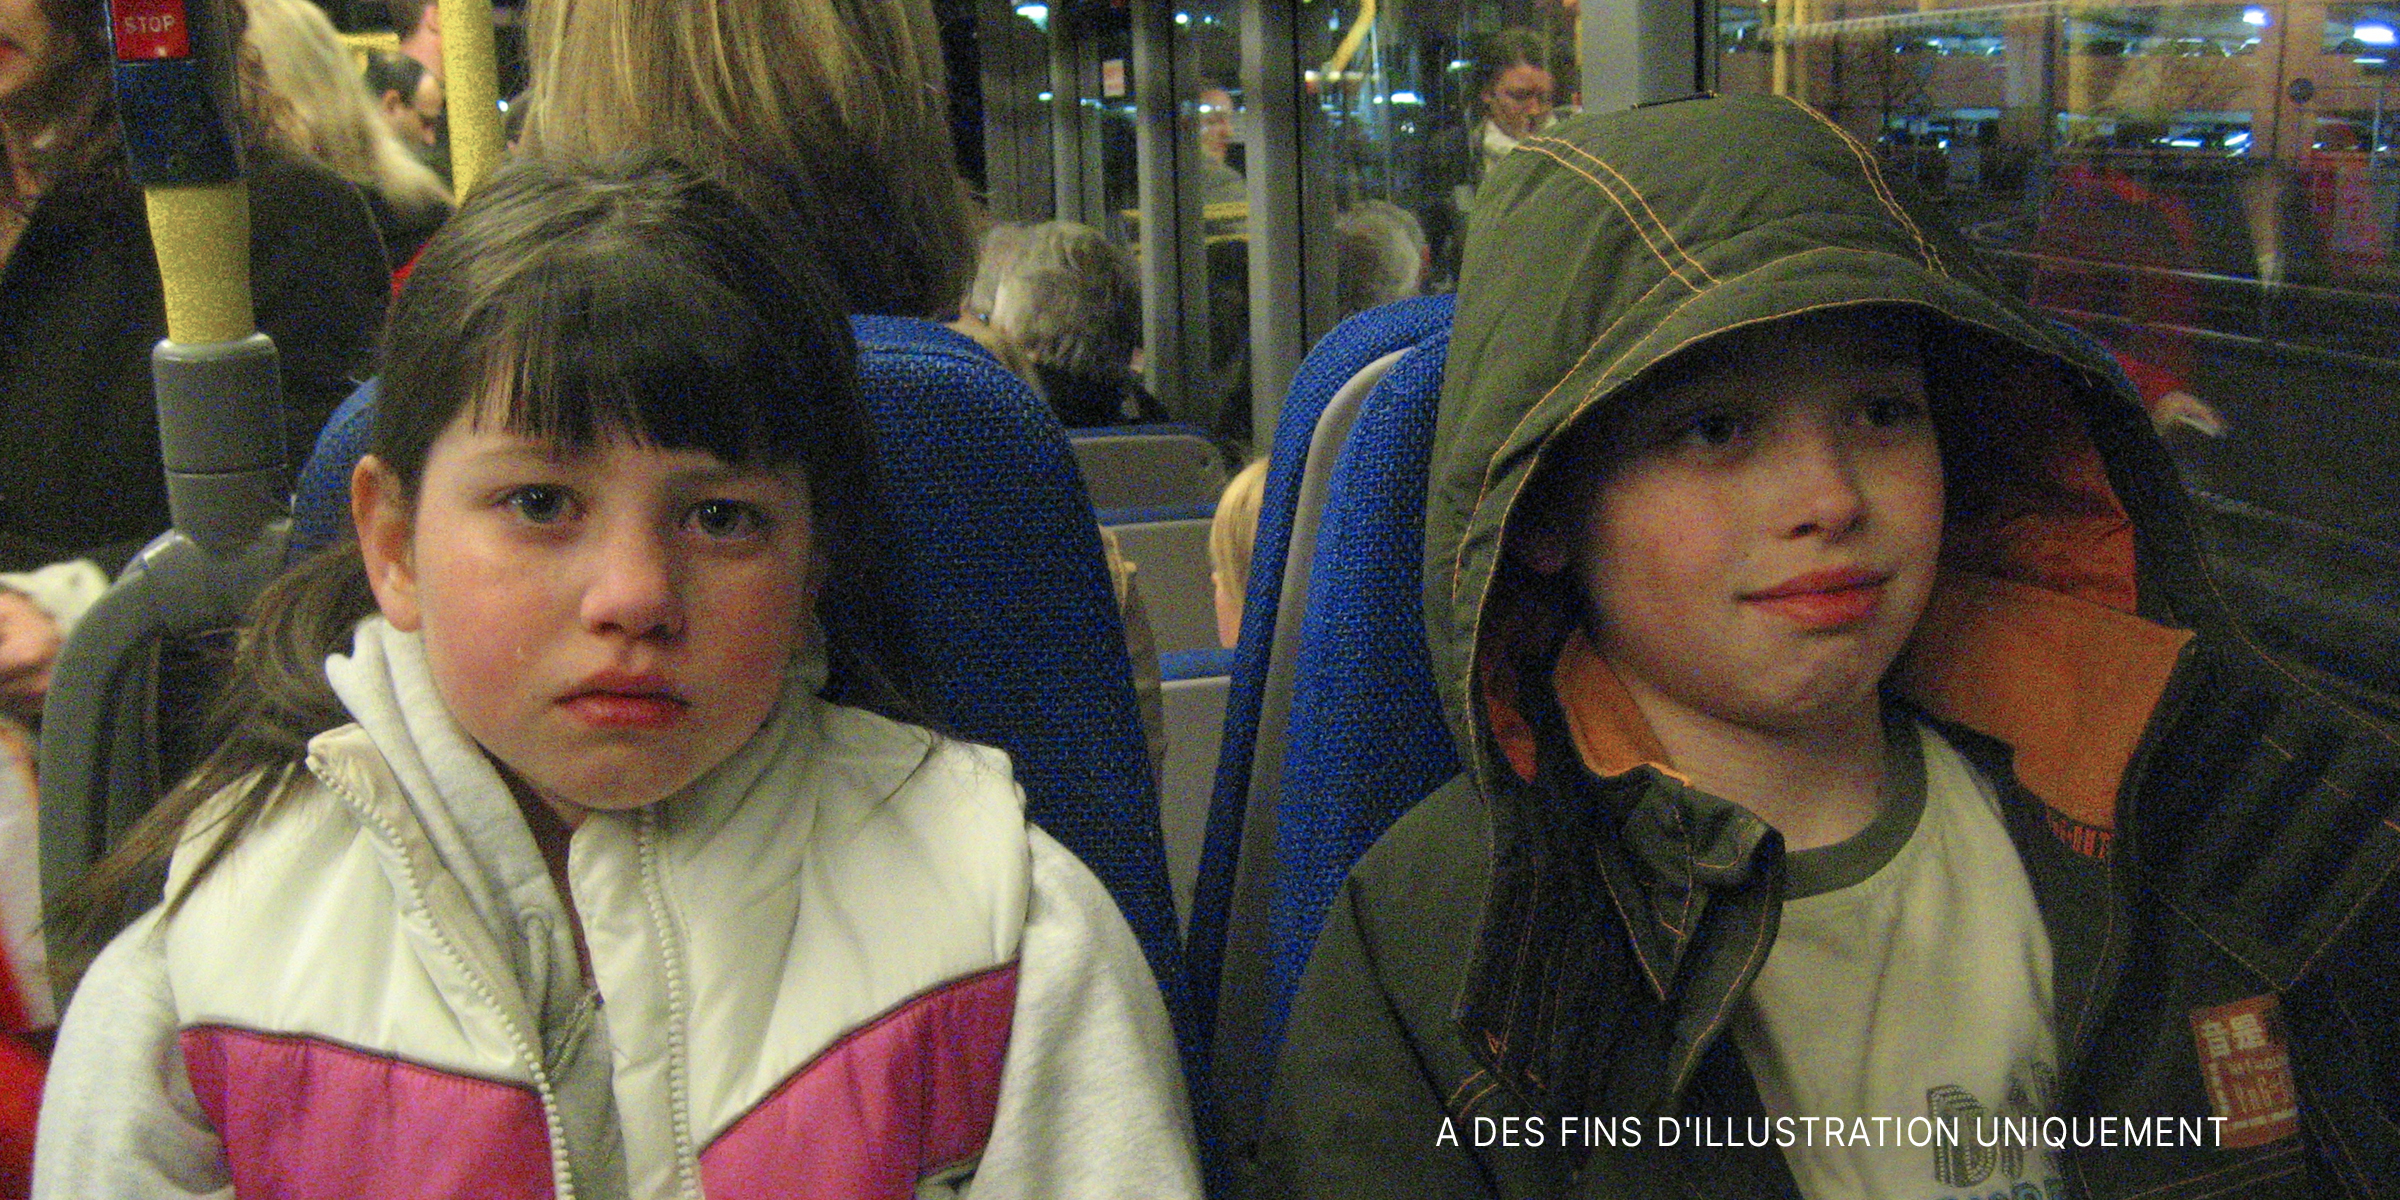 Deux enfants dans un bus | Source : Flickr / fhwrdh (CC BY 2.0)